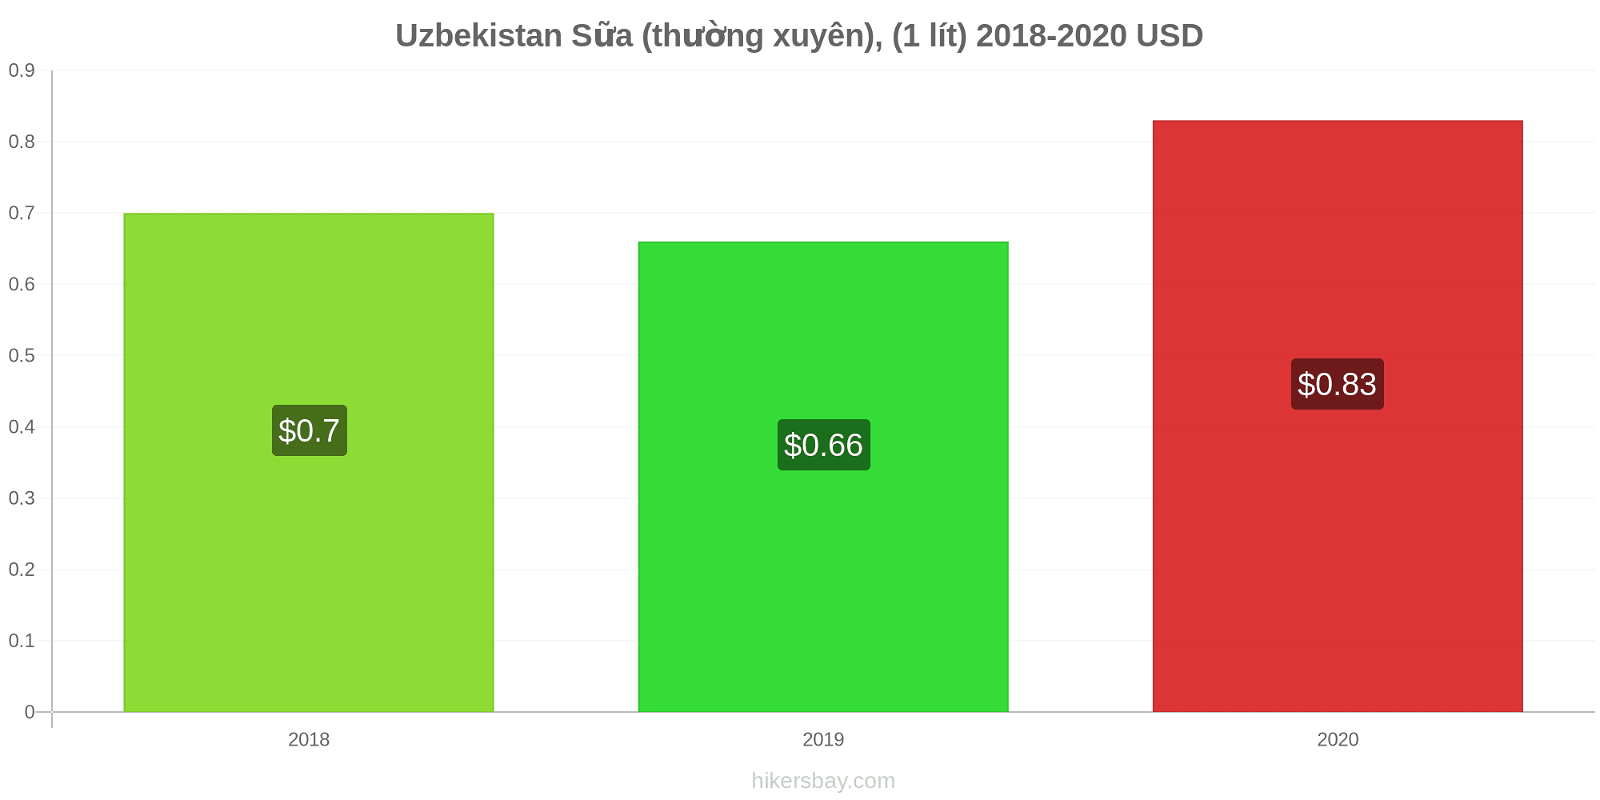 Uzbekistan thay đổi giá Sữa (thường xuyên), (1 lít) hikersbay.com